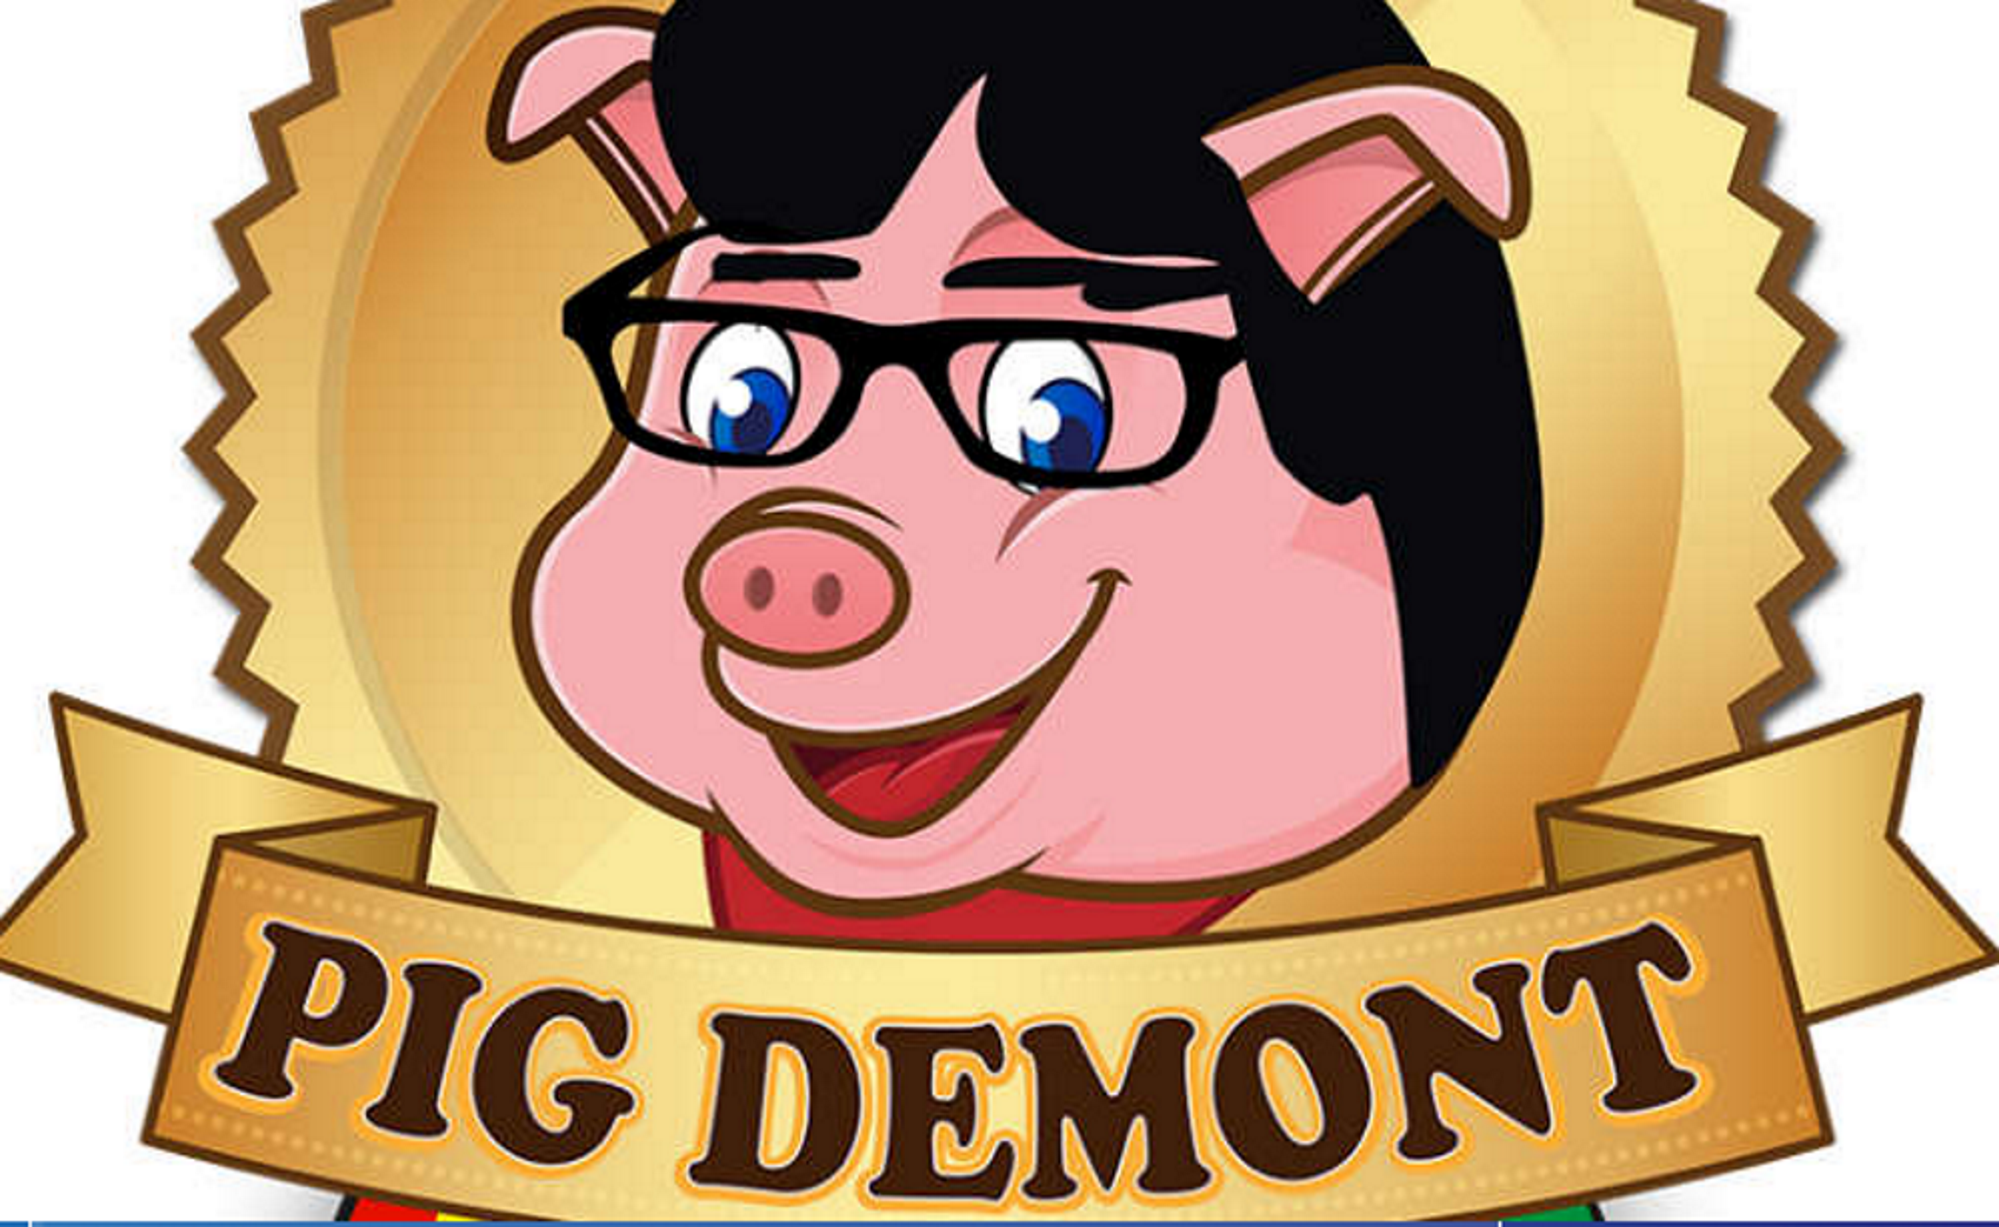 Puigdemont denuncia a una tienda que denigra su apellido y lo identifica con un cerdo